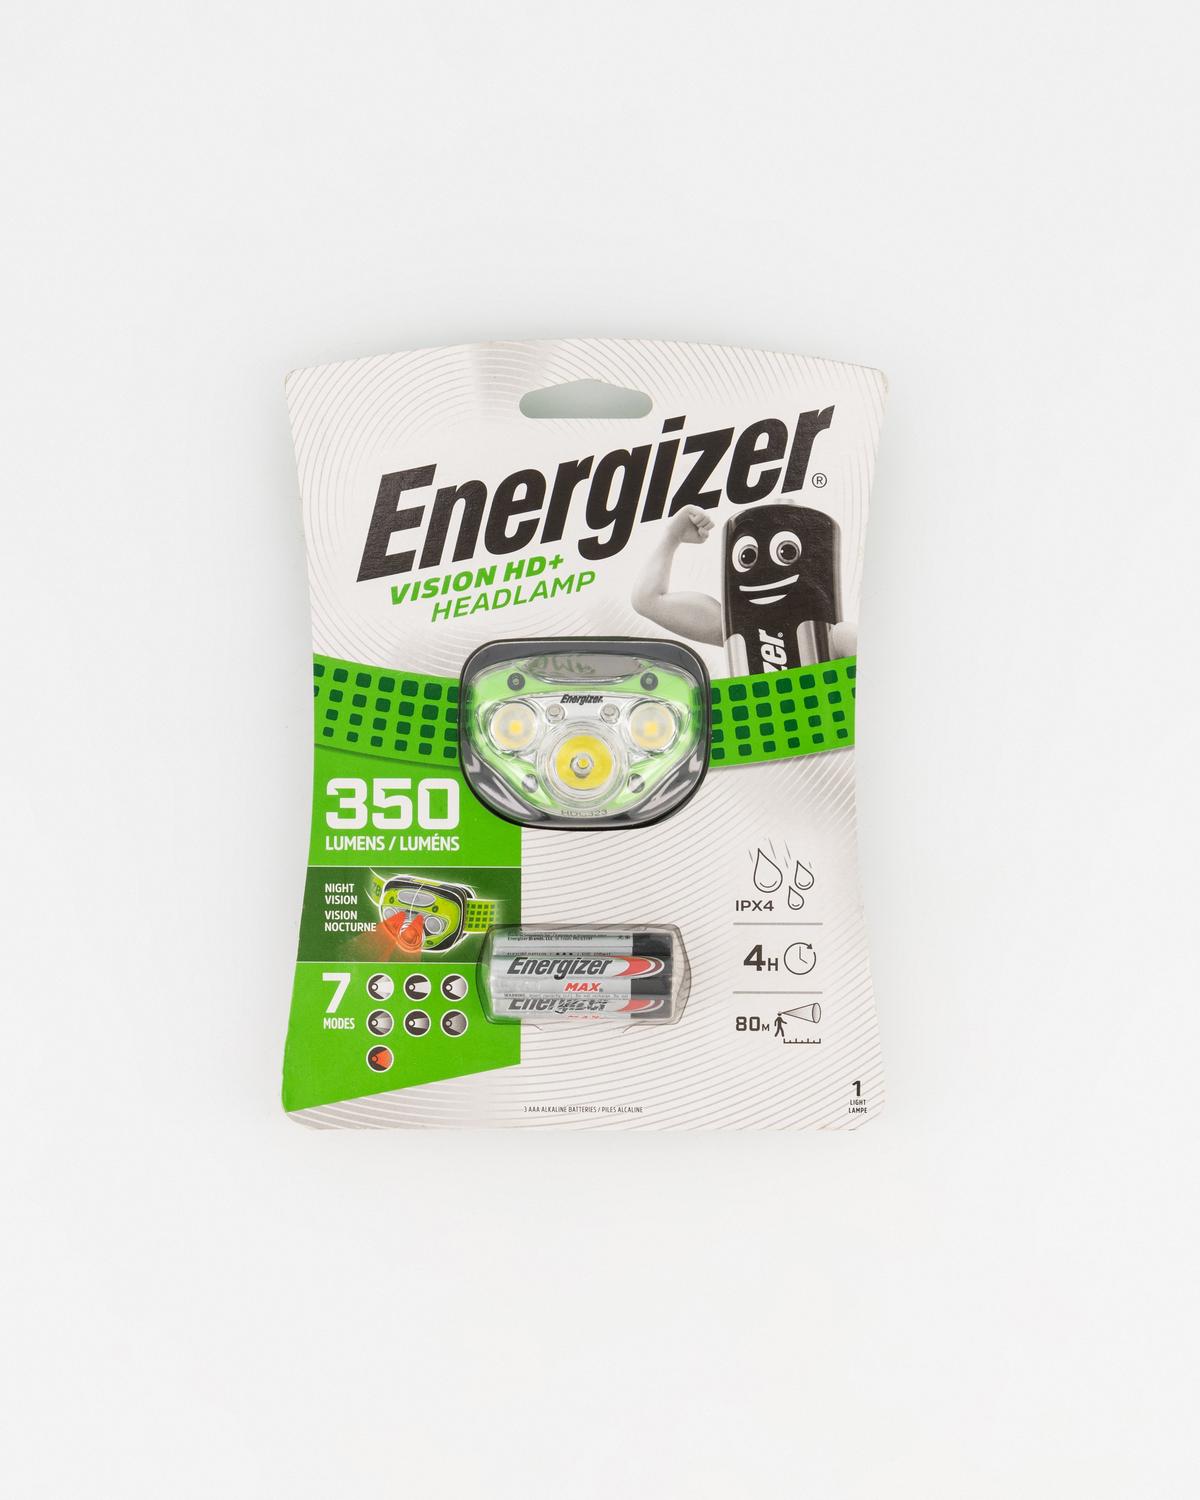 Energizer® Vision HD+ 350 Lumen Headlamp -  Green